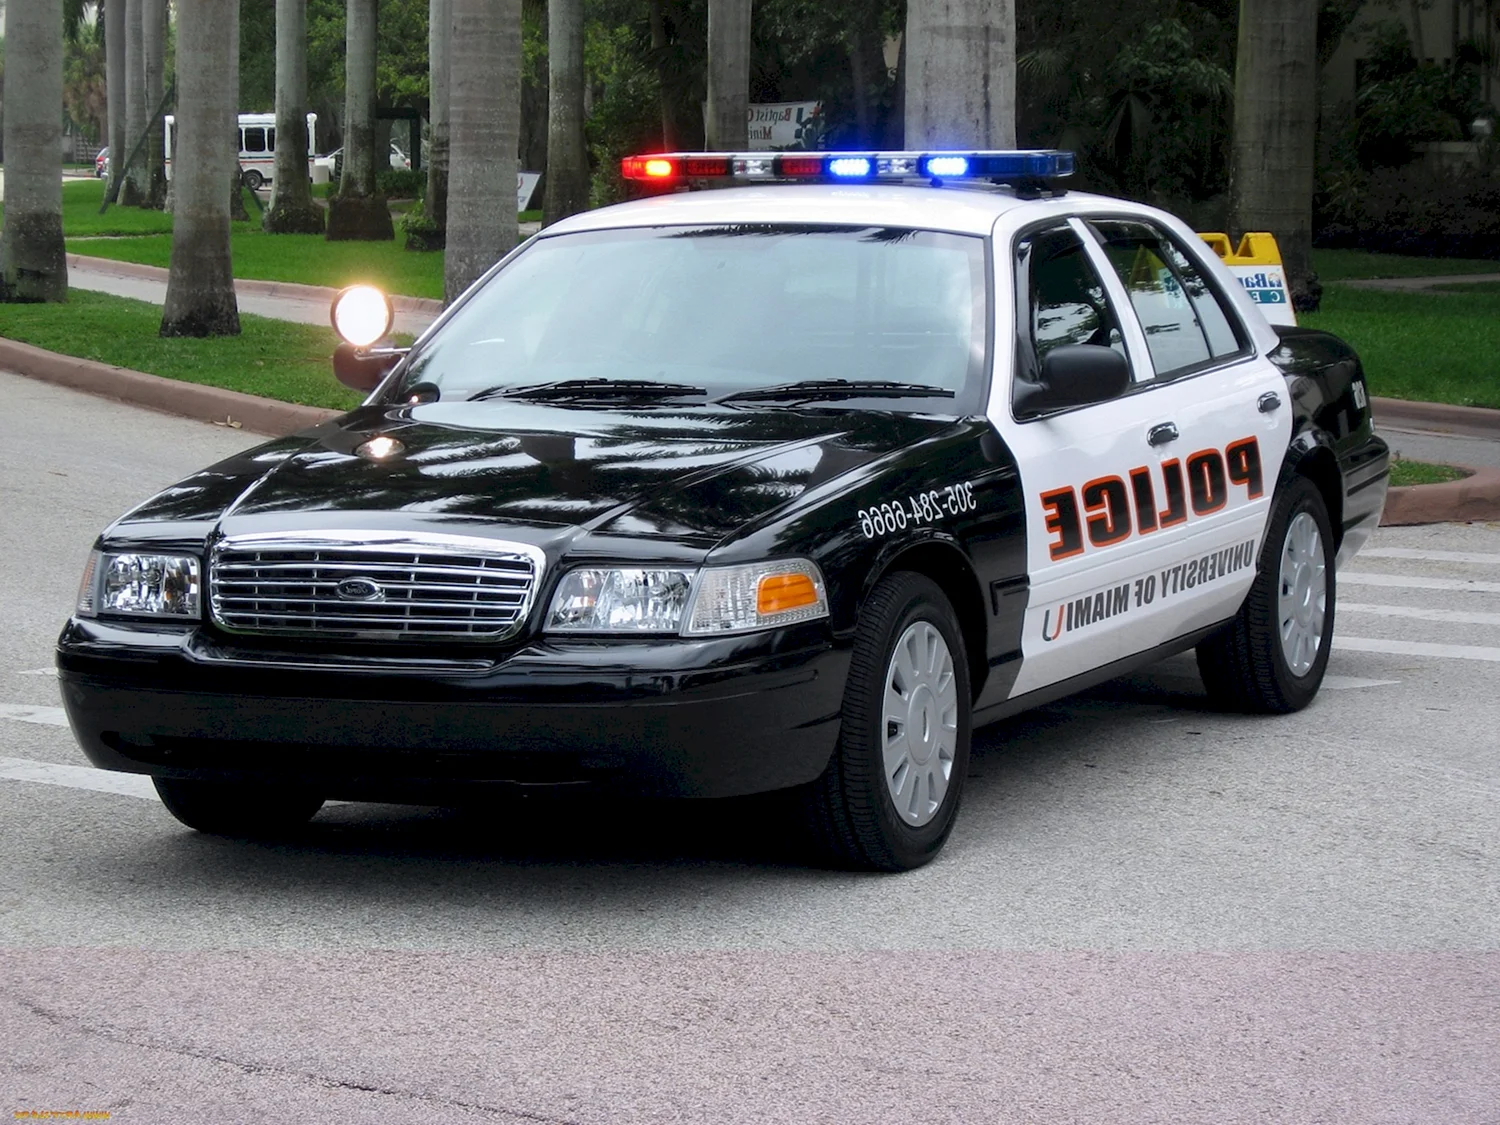 Chevrolet Caprice 2006 Police